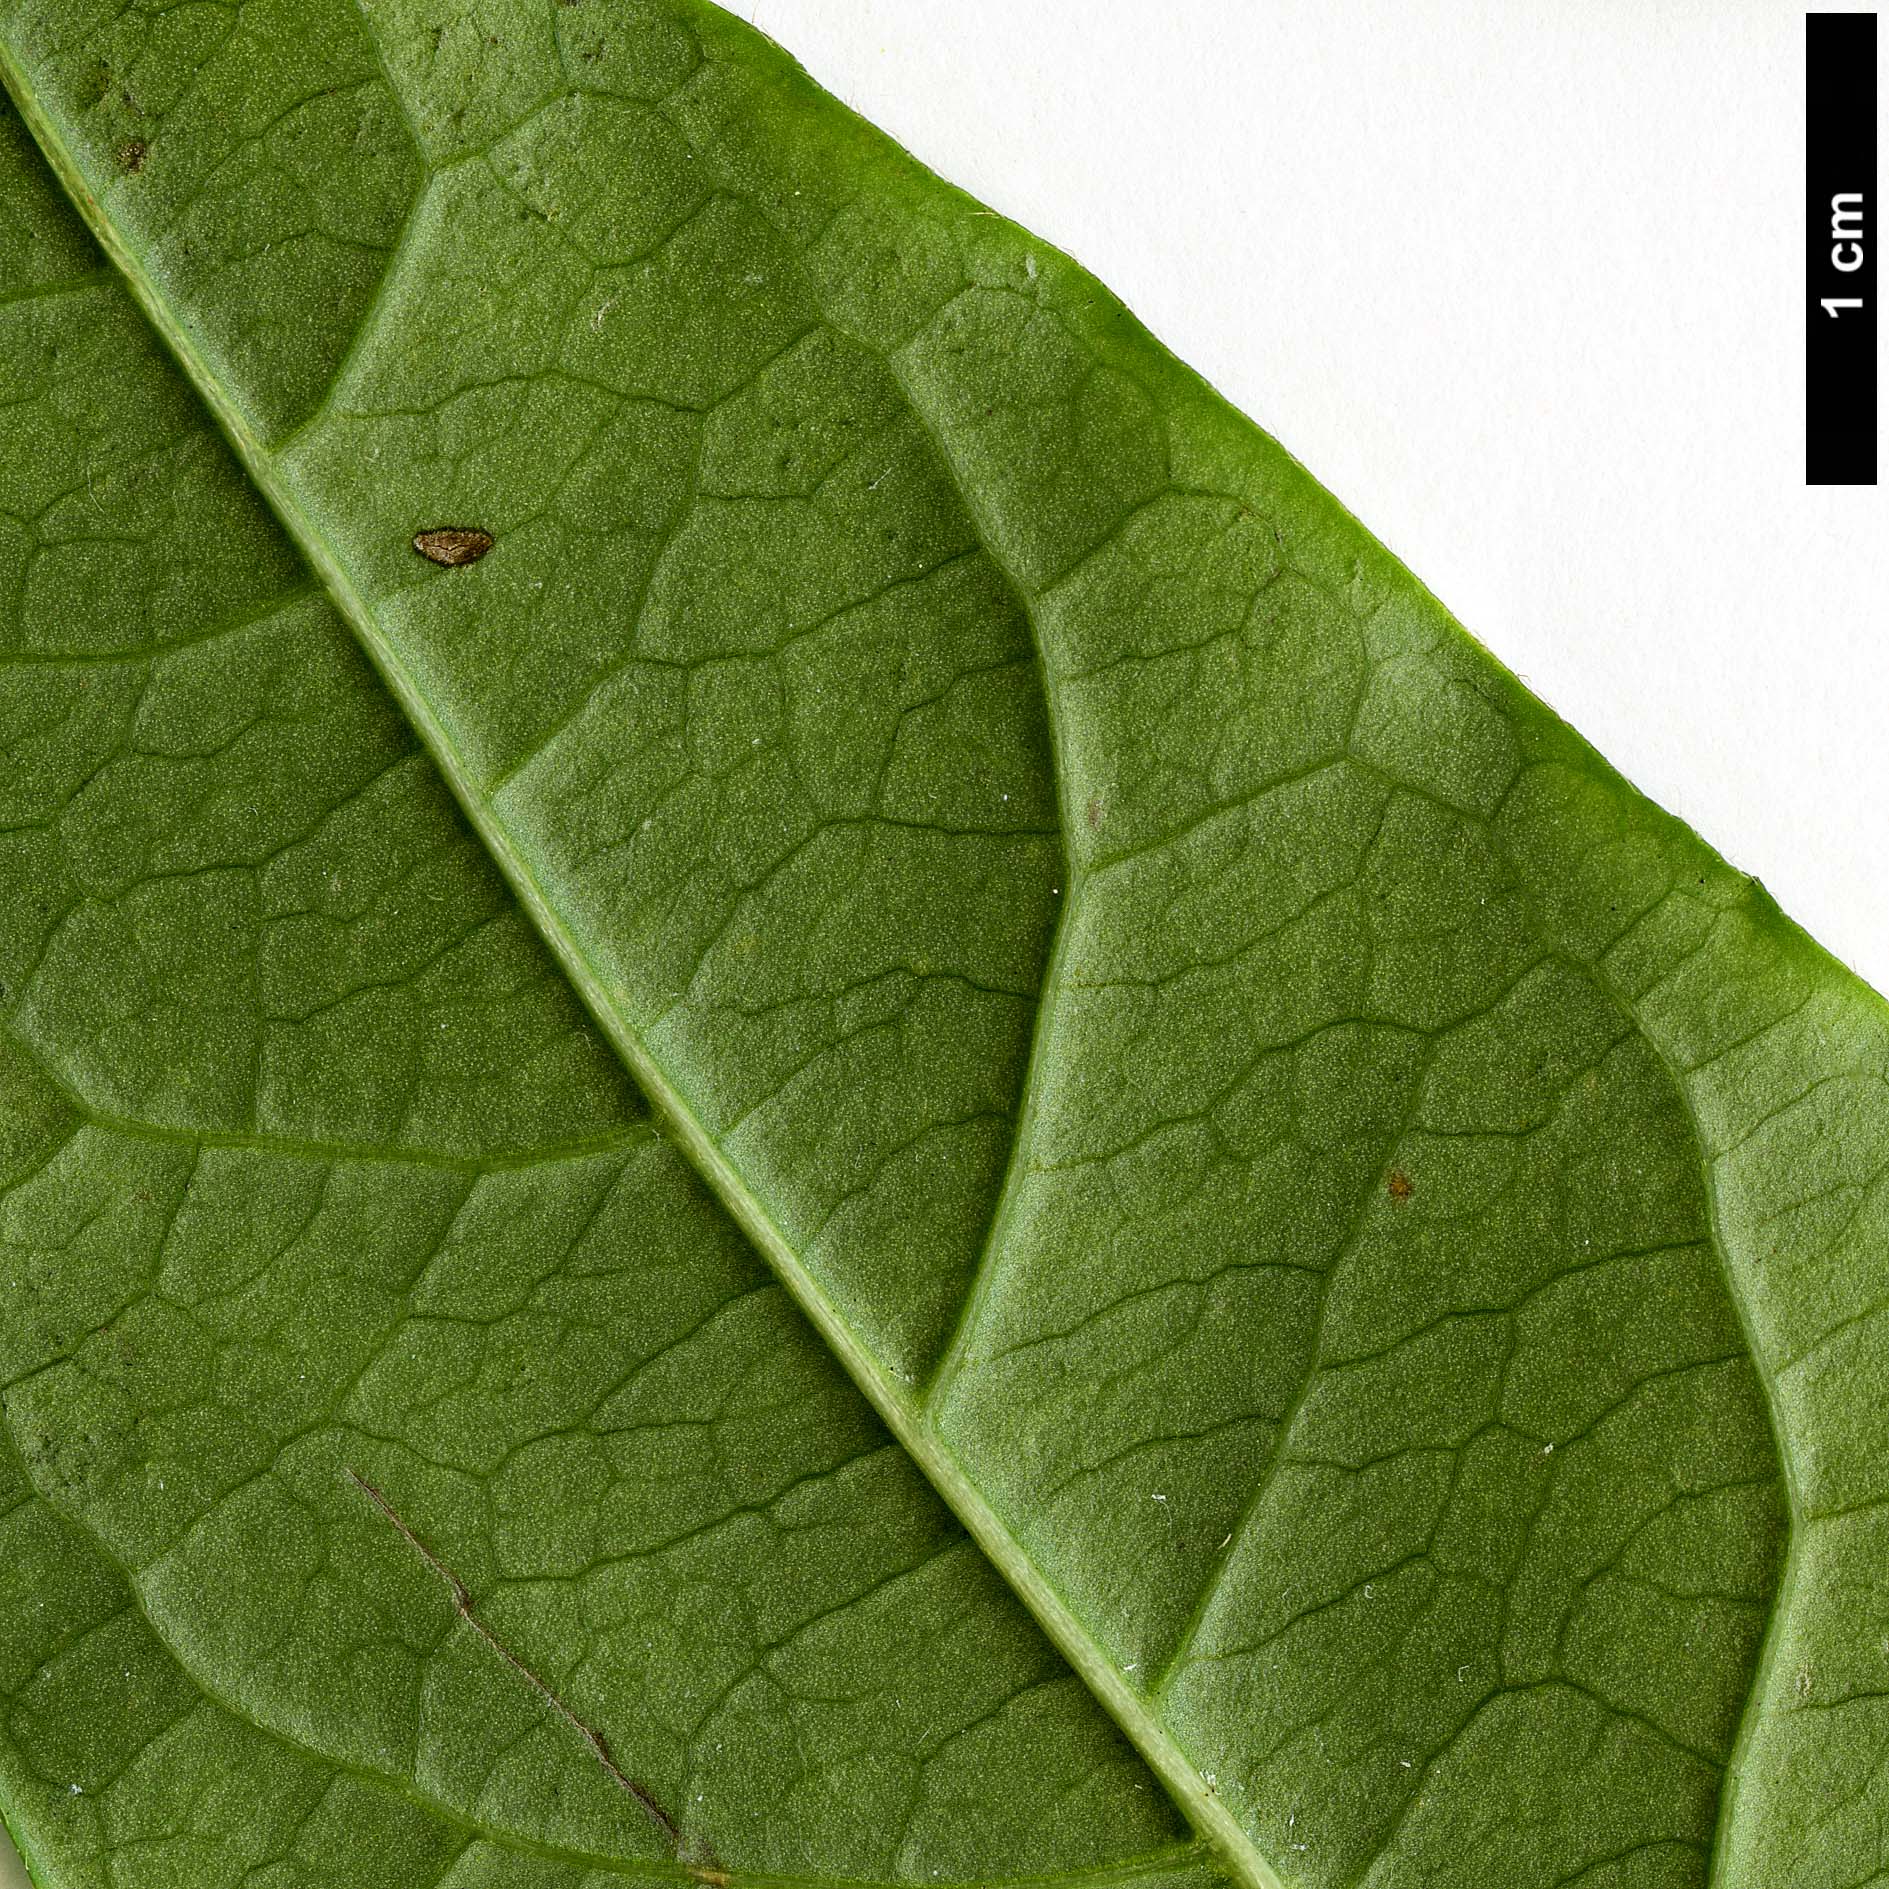 High resolution image: Family: Adoxaceae - Genus: Viburnum - Taxon: triphyllum